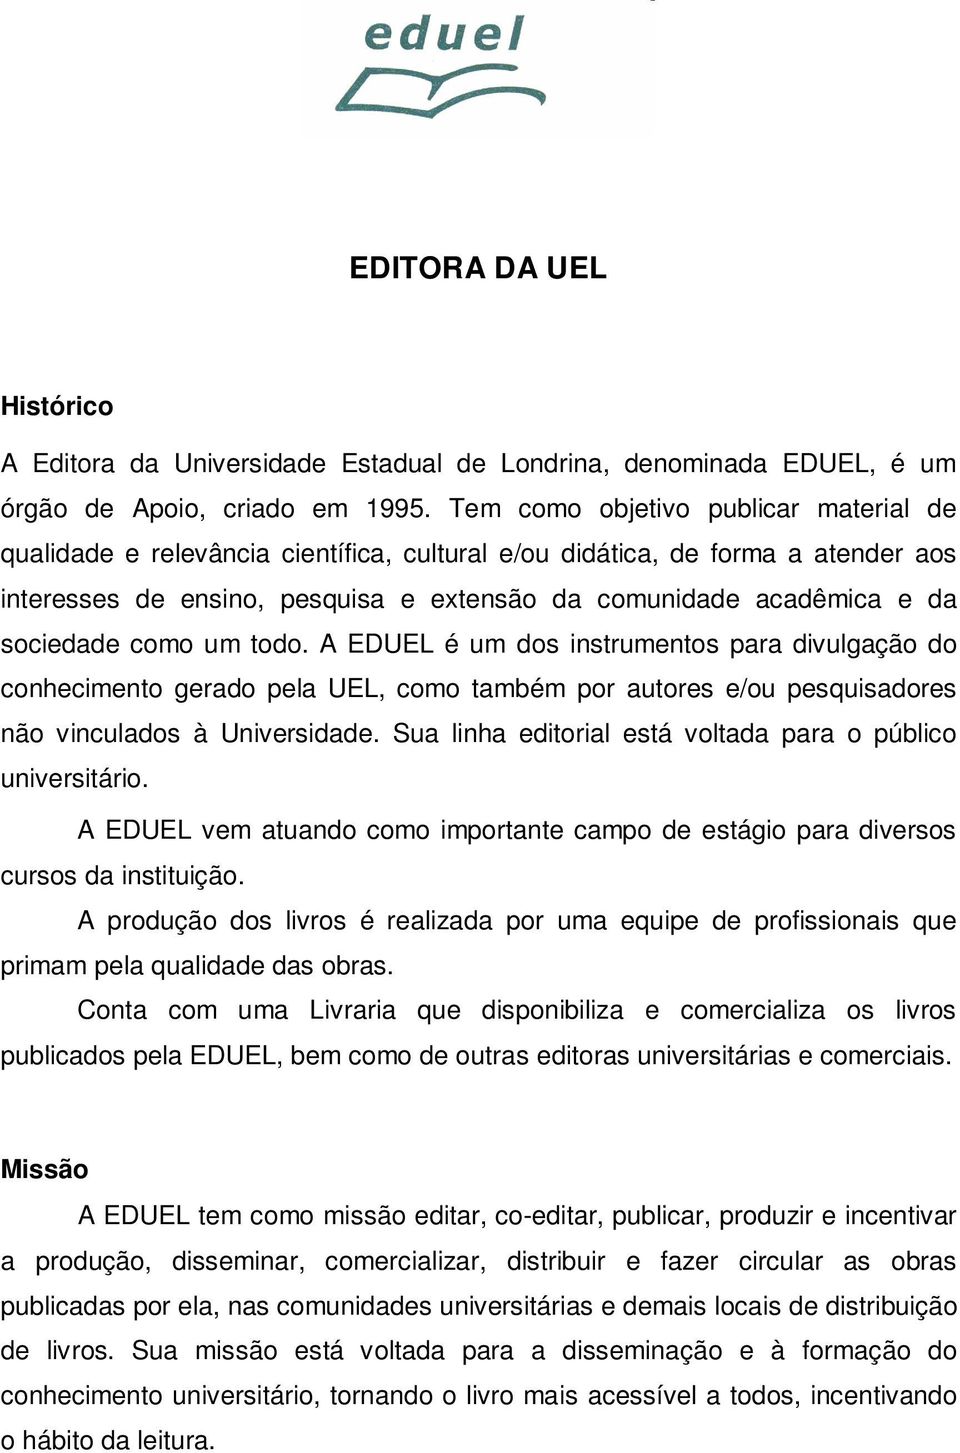 sociedade como um todo. A EDUEL é um dos instrumentos para divulgação do conhecimento gerado pela UEL, como também por autores e/ou pesquisadores não vinculados à Universidade.